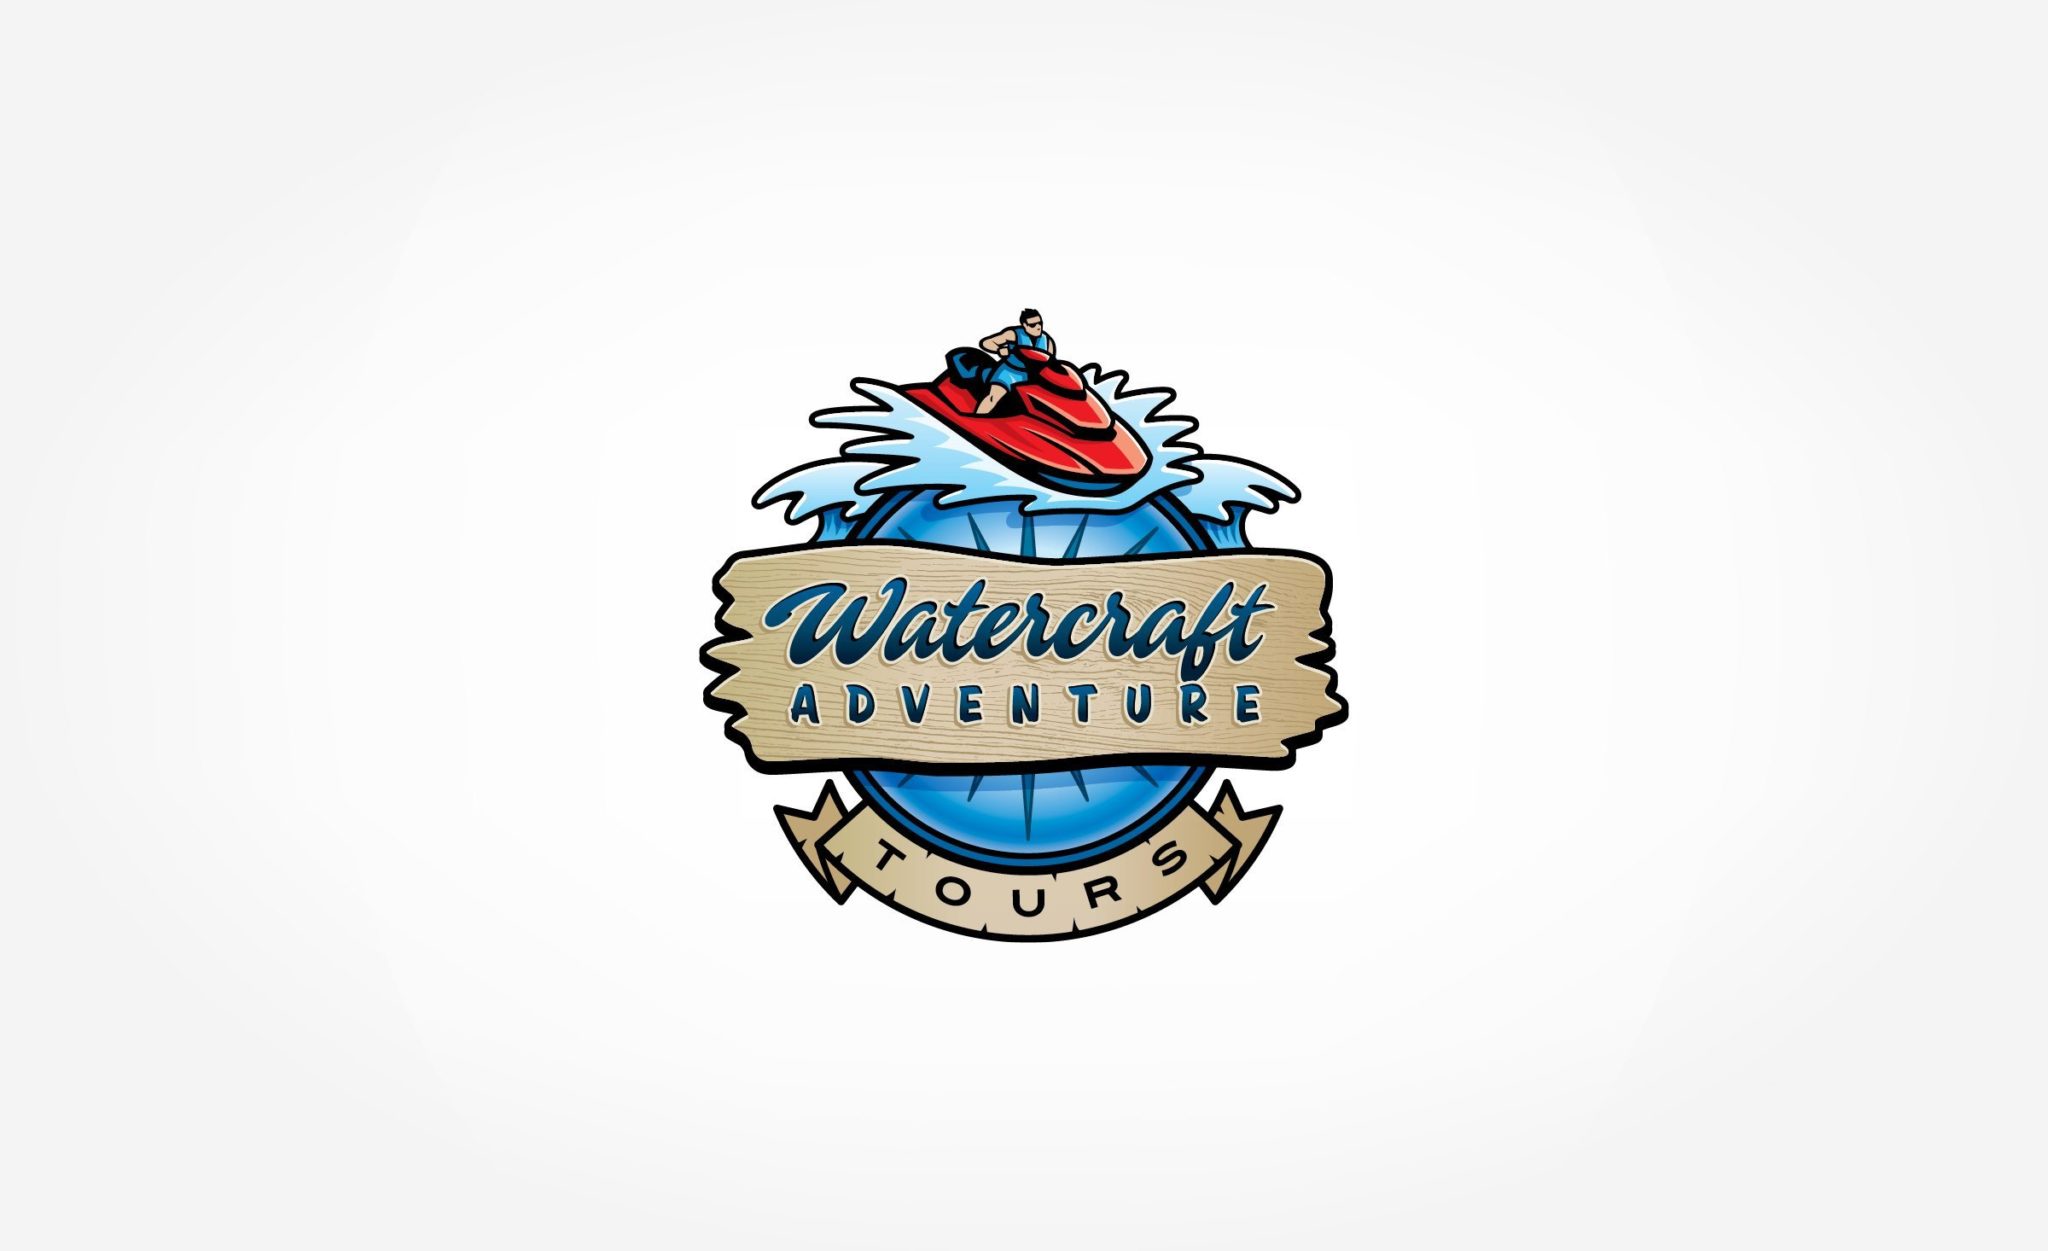 Watercraft Adventures